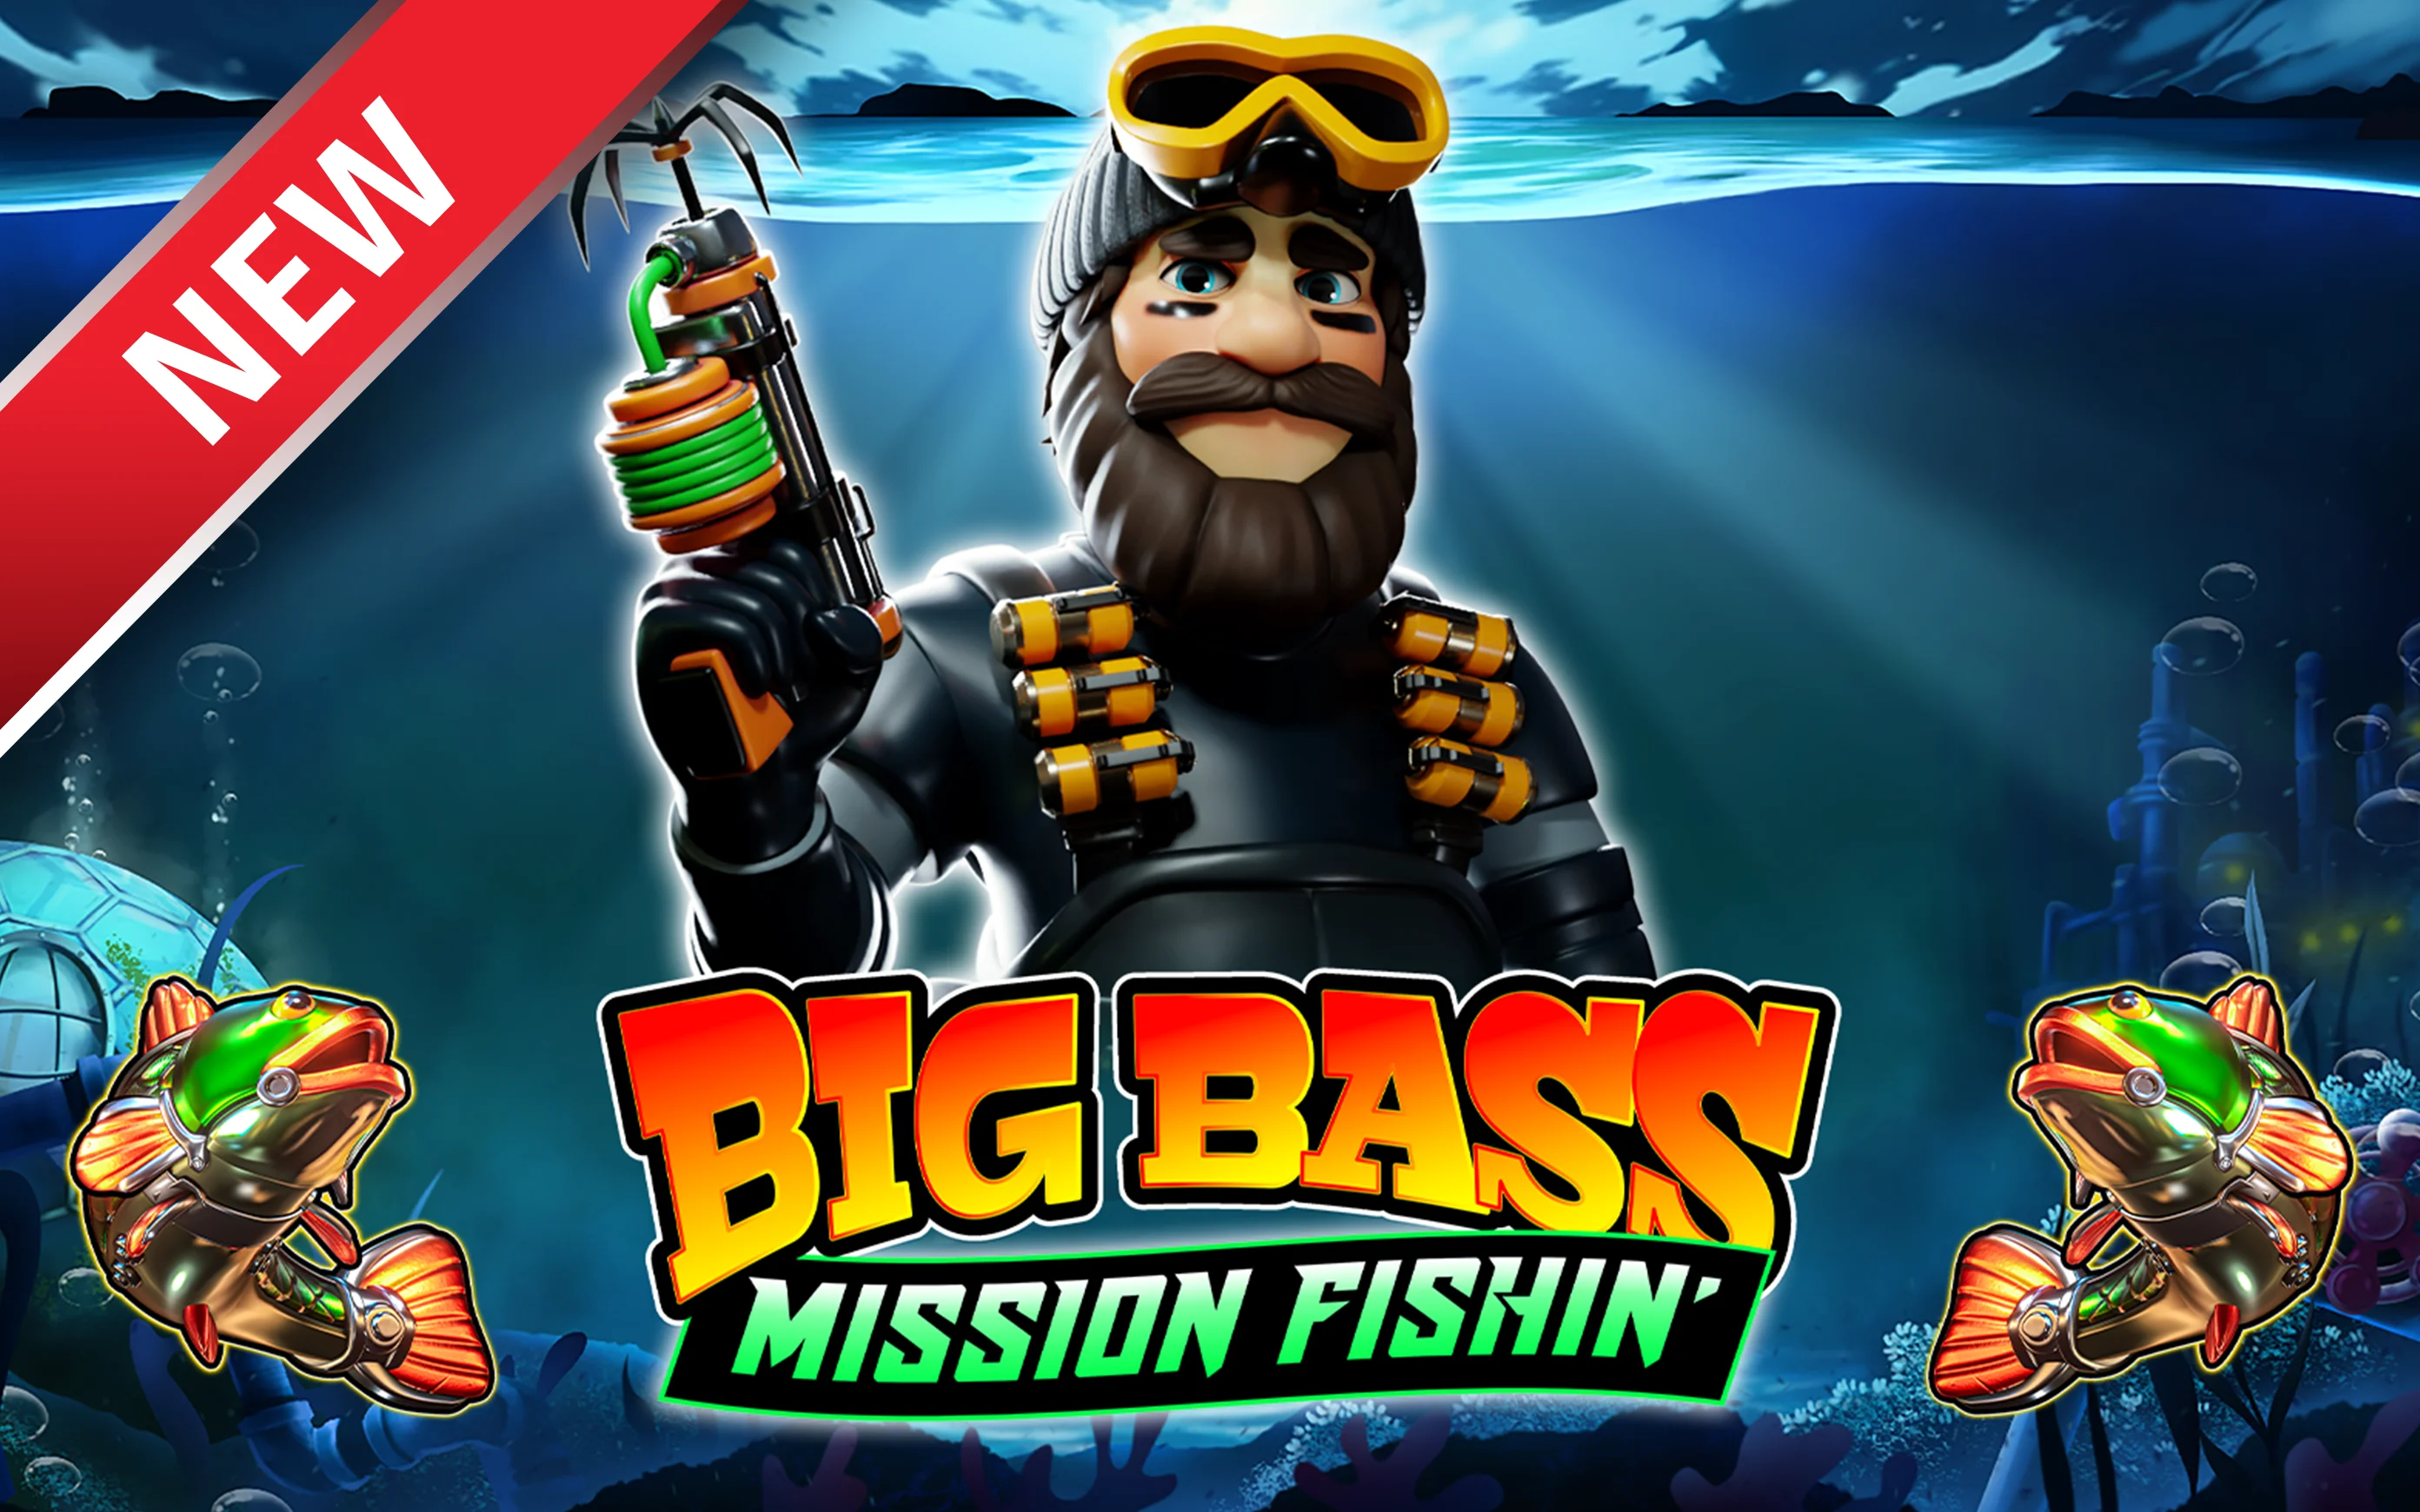 Gioca a Big Bass Mission Fishin’ sul casino online Starcasino.be